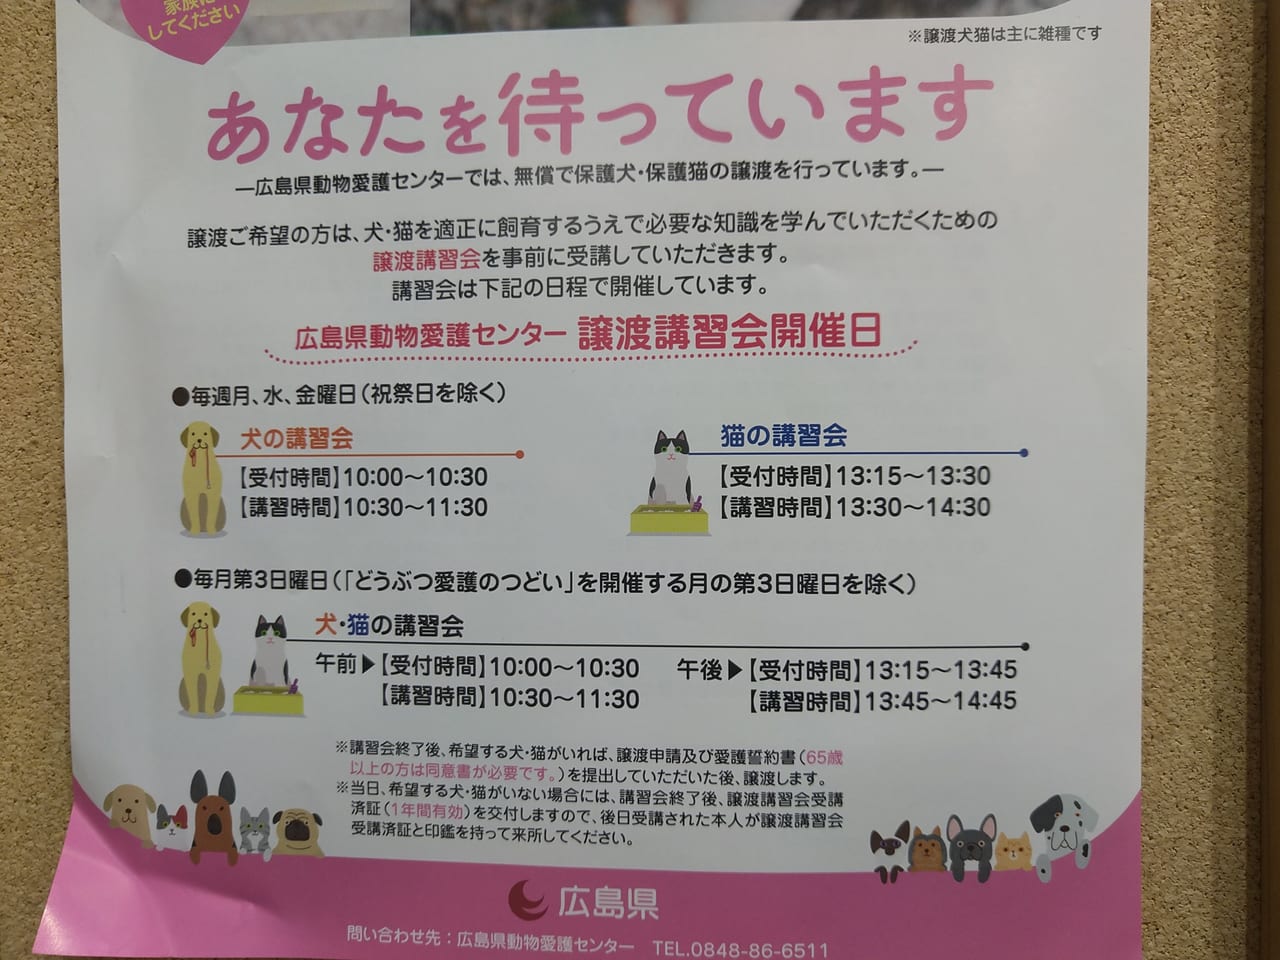 「広島県動物愛護センター」の犬猫譲渡講習会のチラシ